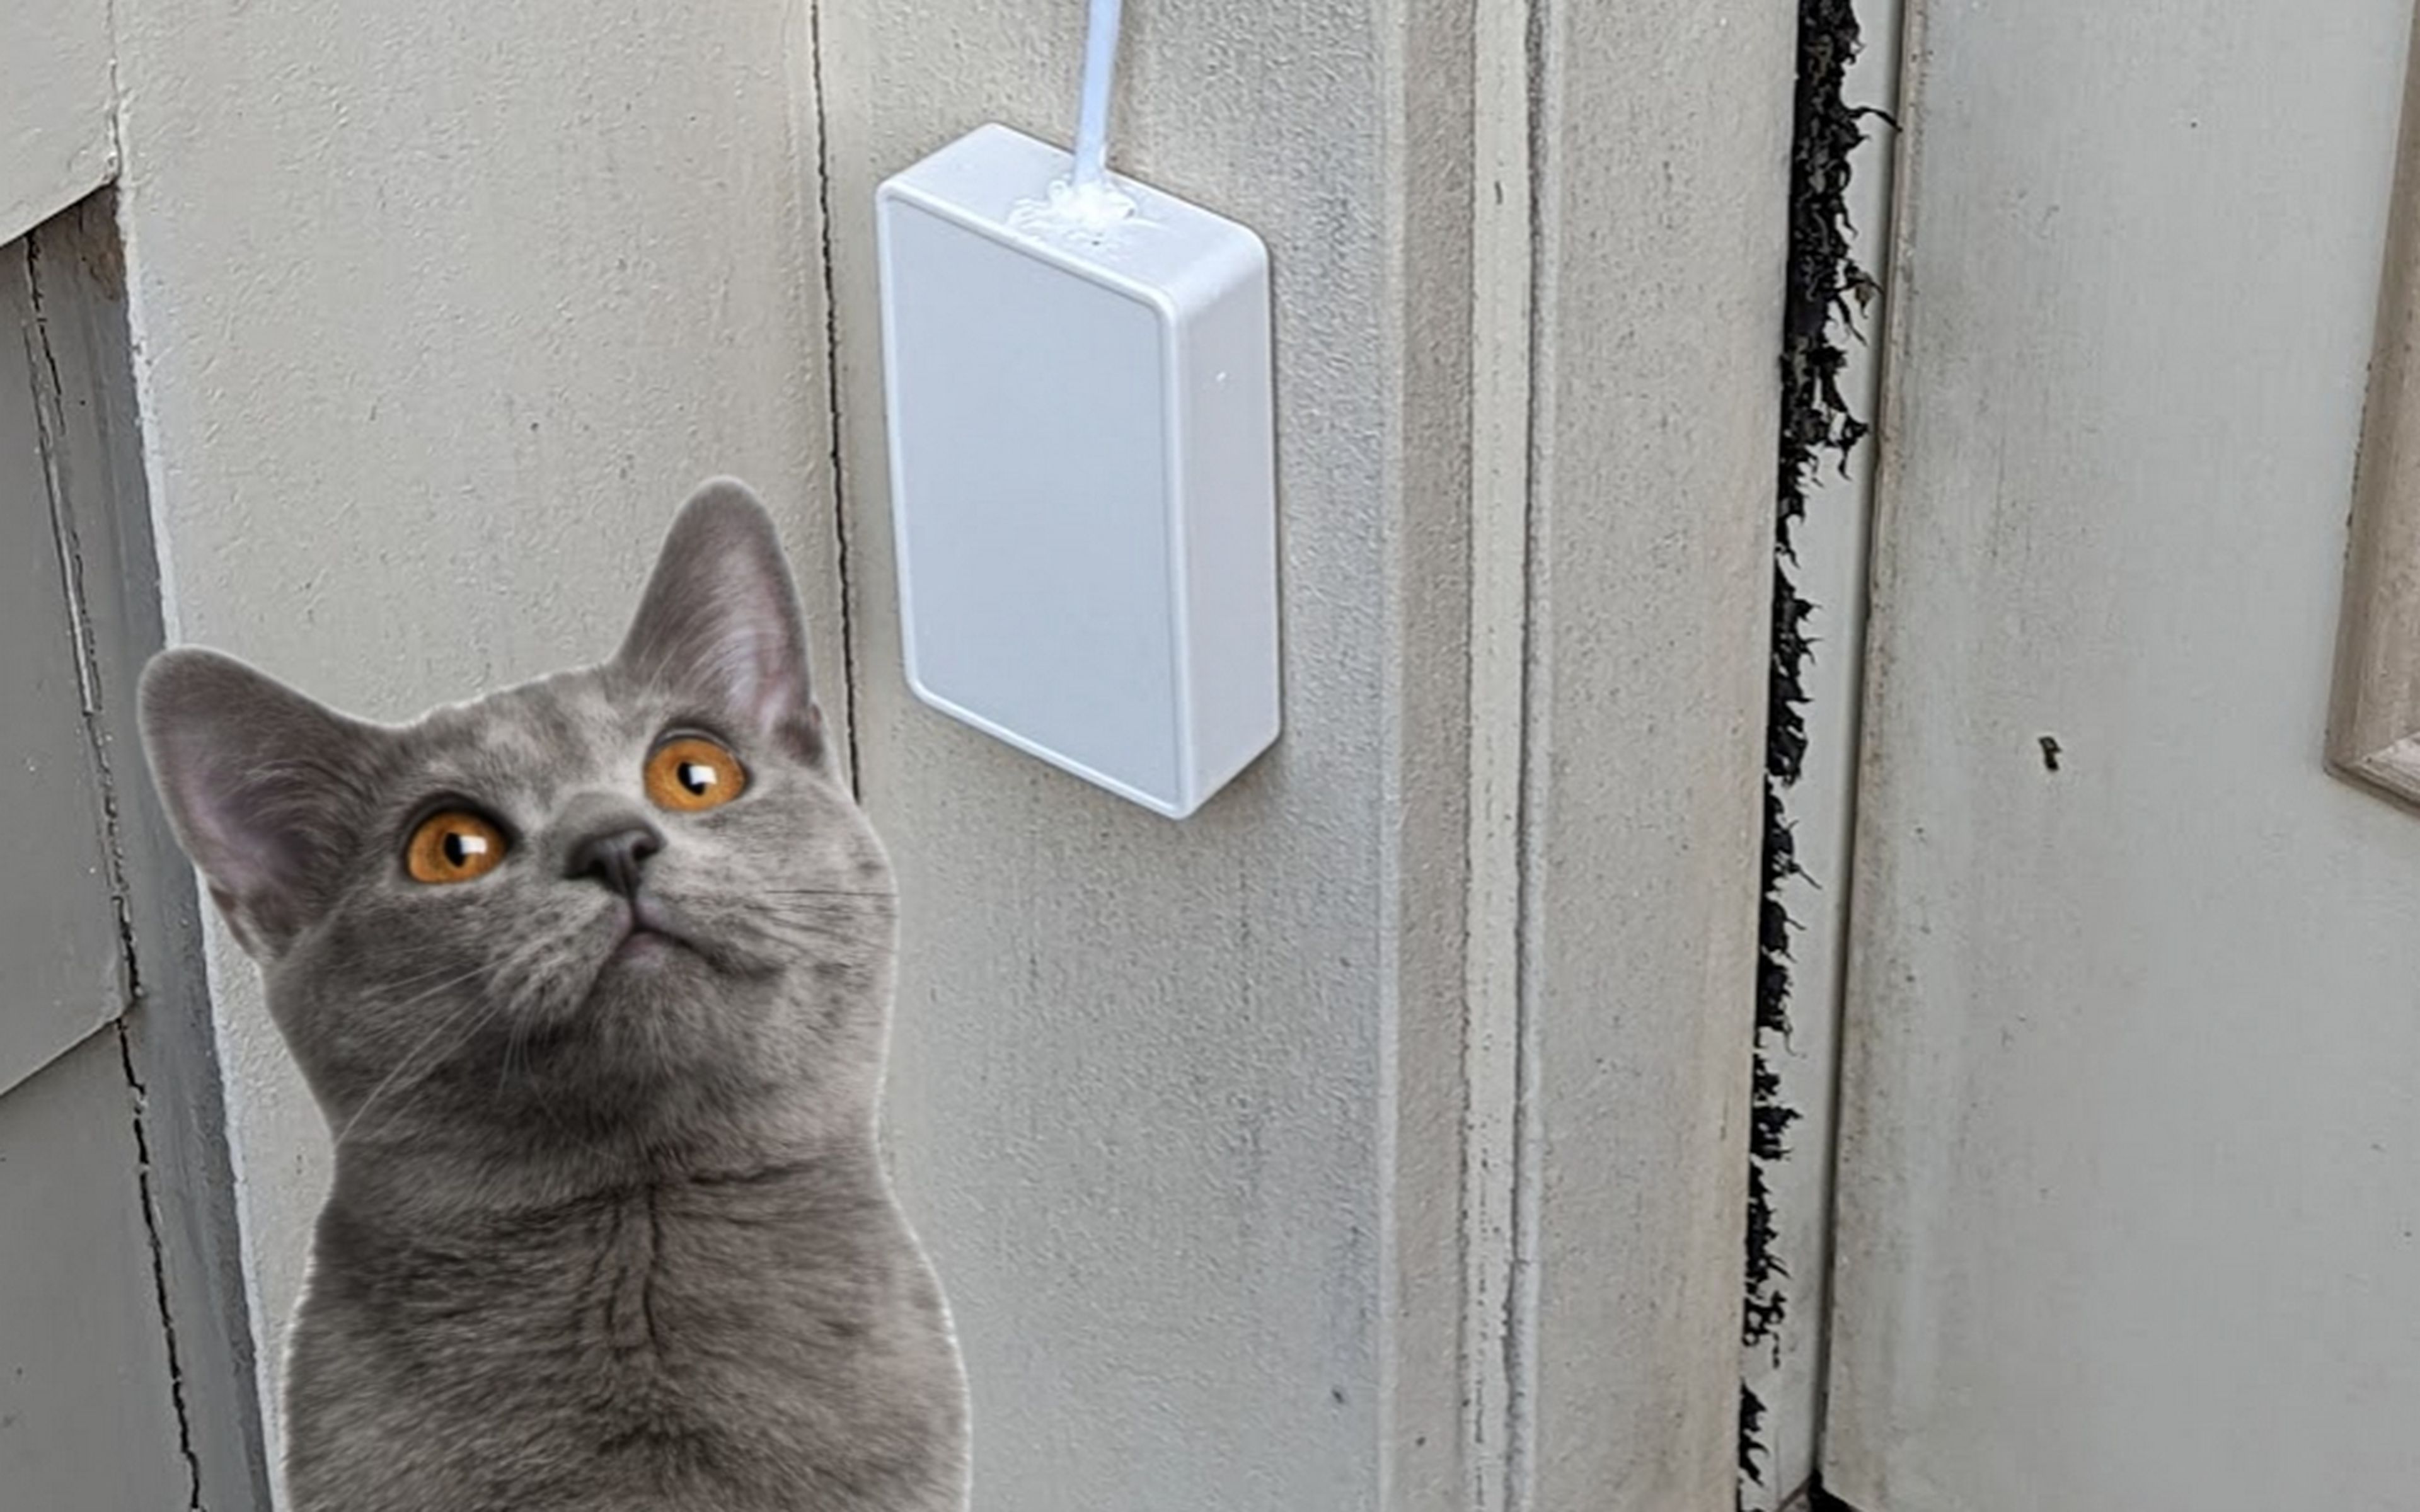 Inventan un timbre con IA para gatos que solo abre la puerta a los maullidos, y puedes hacerlo tú mismo con una Rapsberry Pi